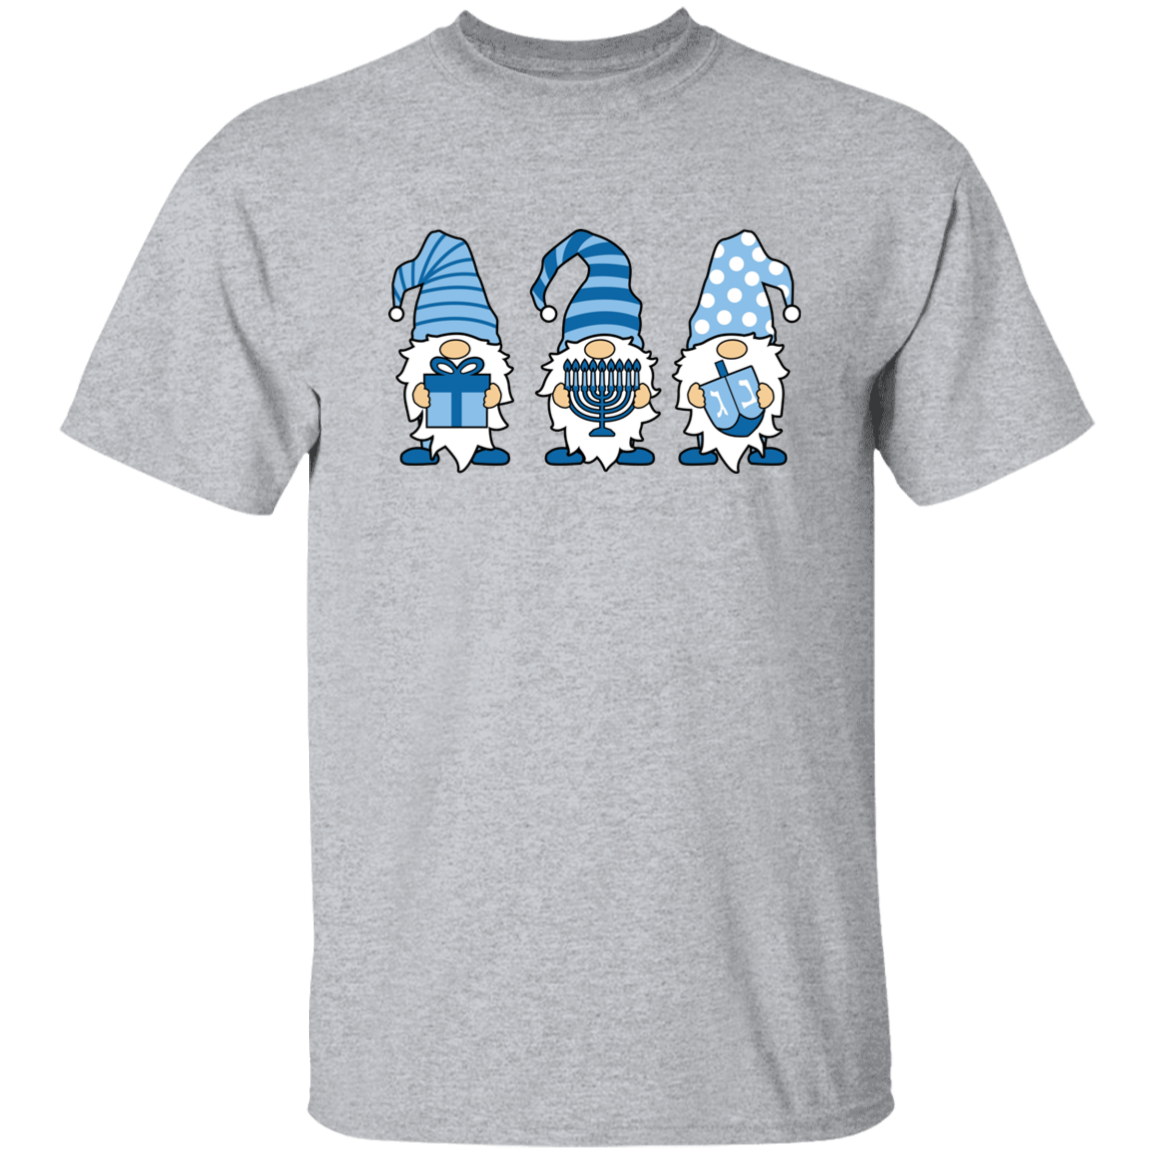 Hannukah Gnomes 5.3 oz. T-Shirt